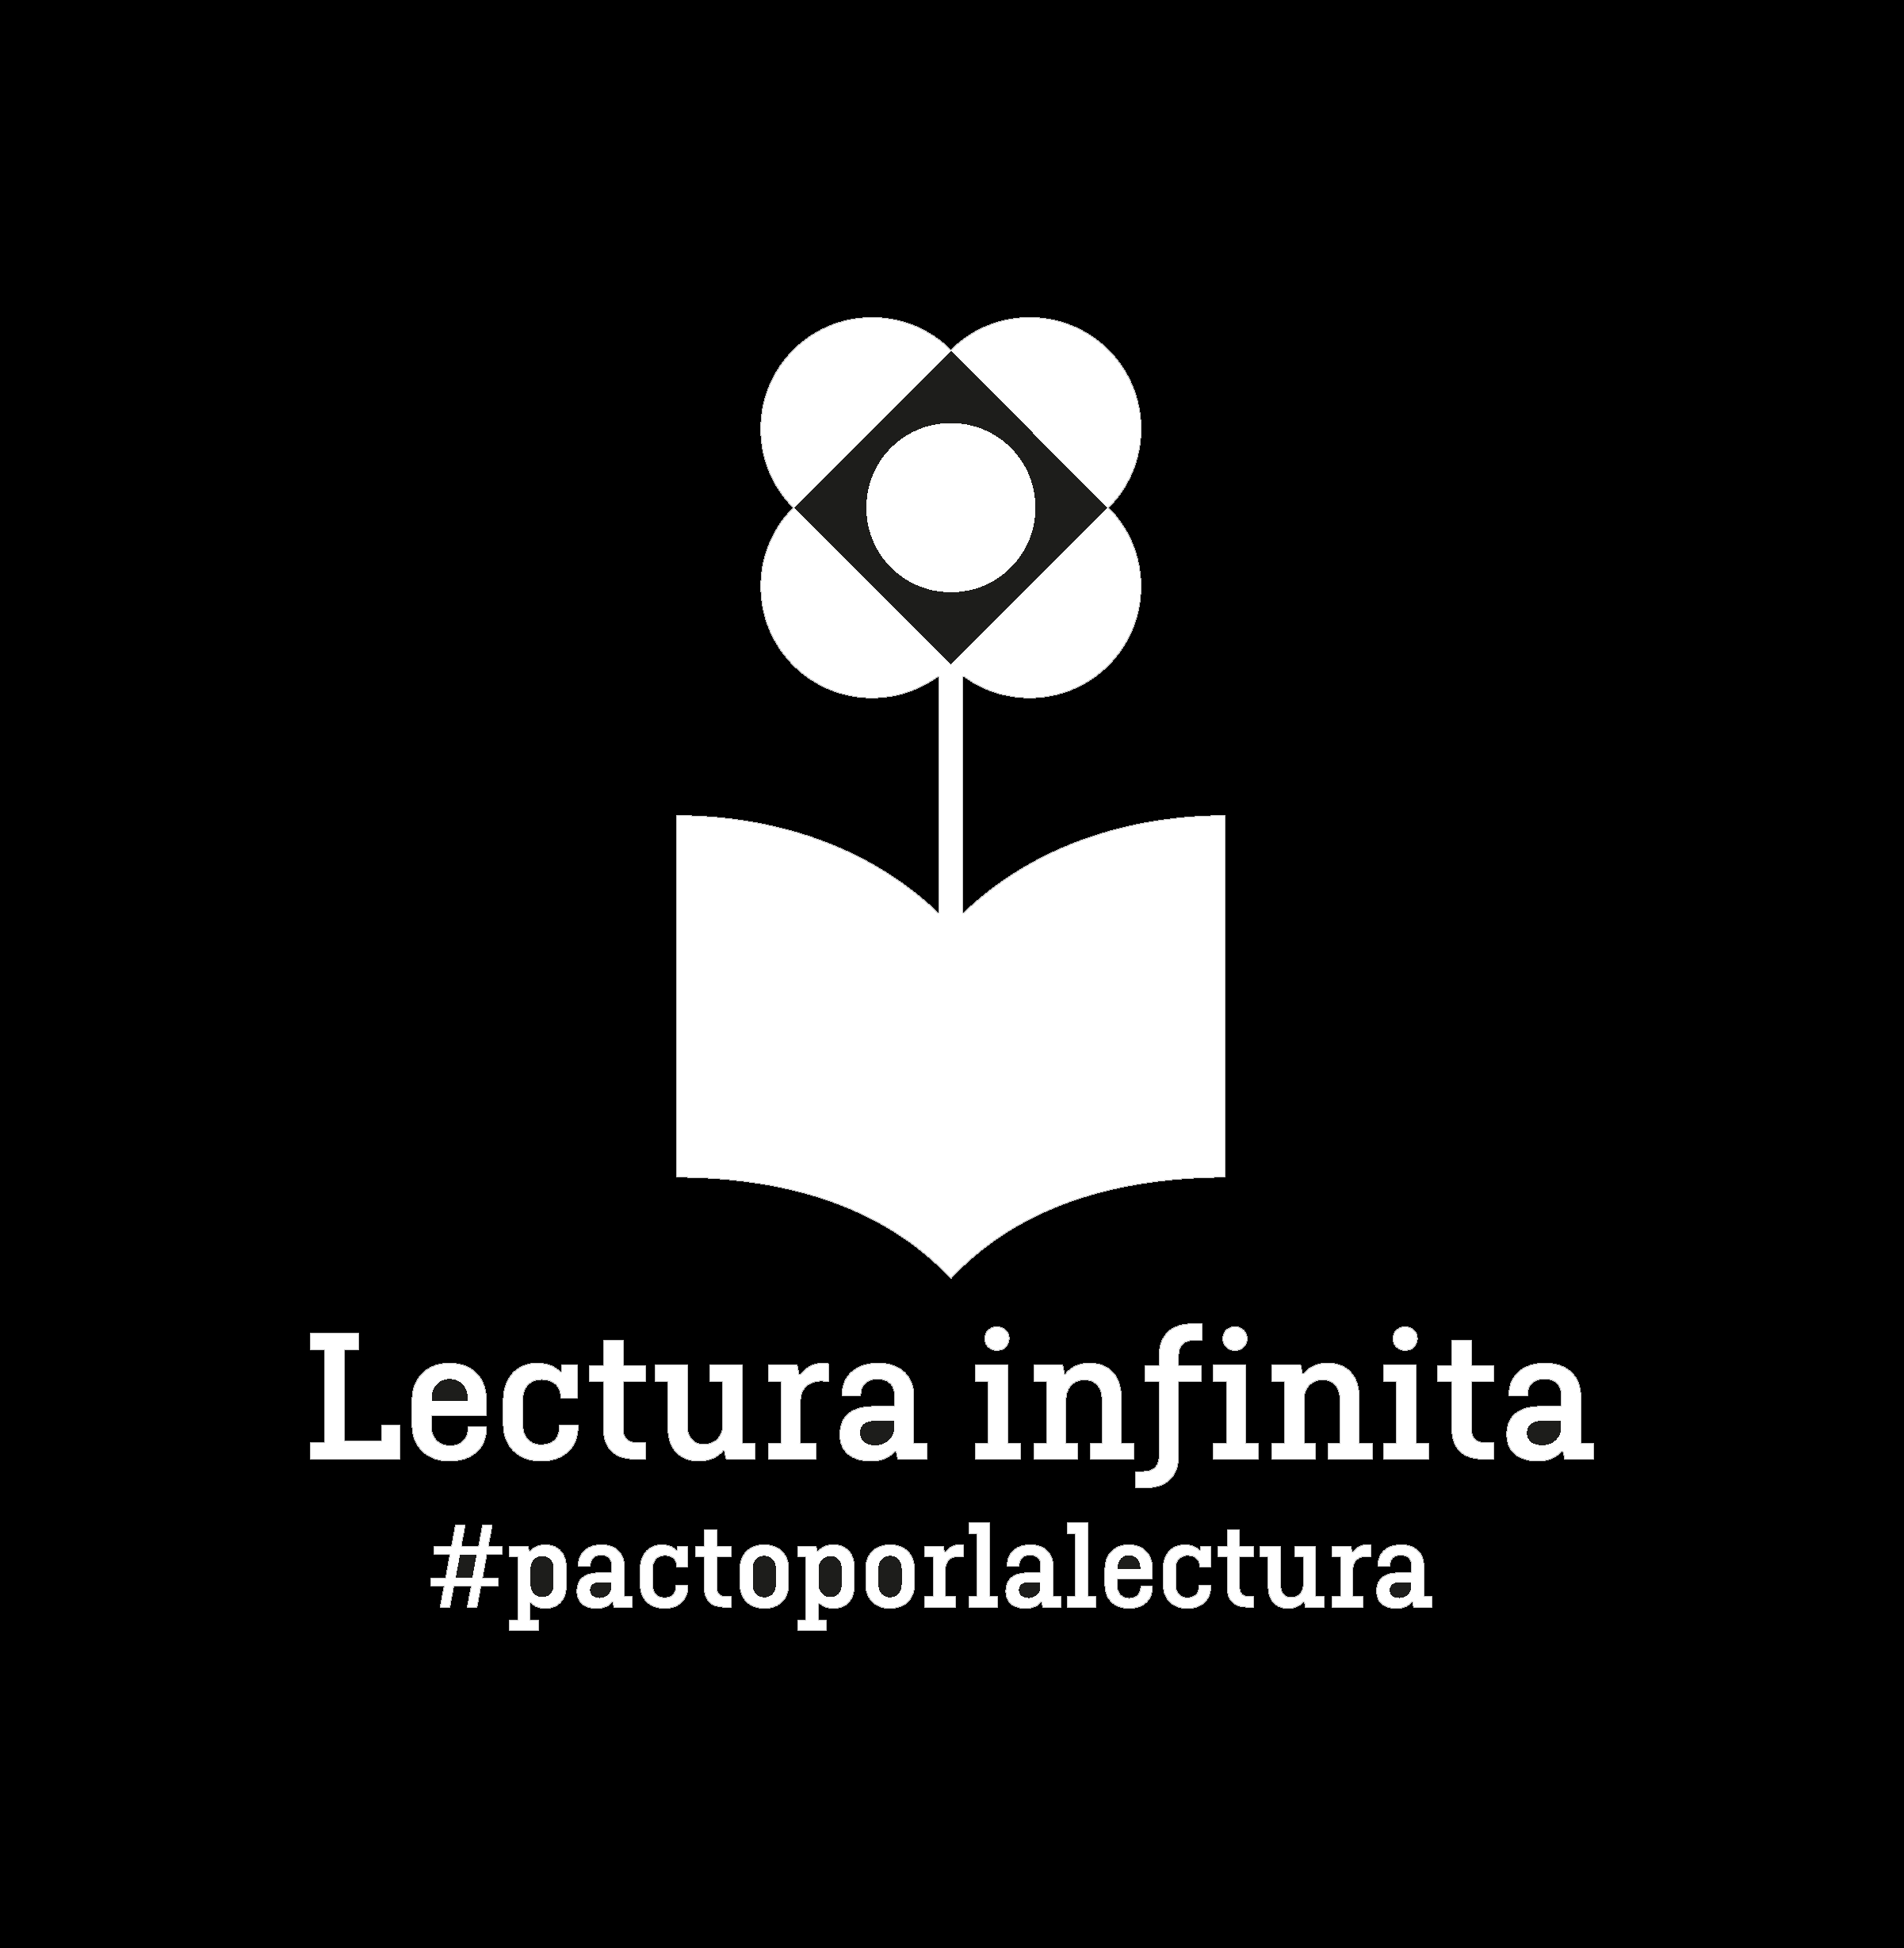 Lectura infinita #pactoporlacultura